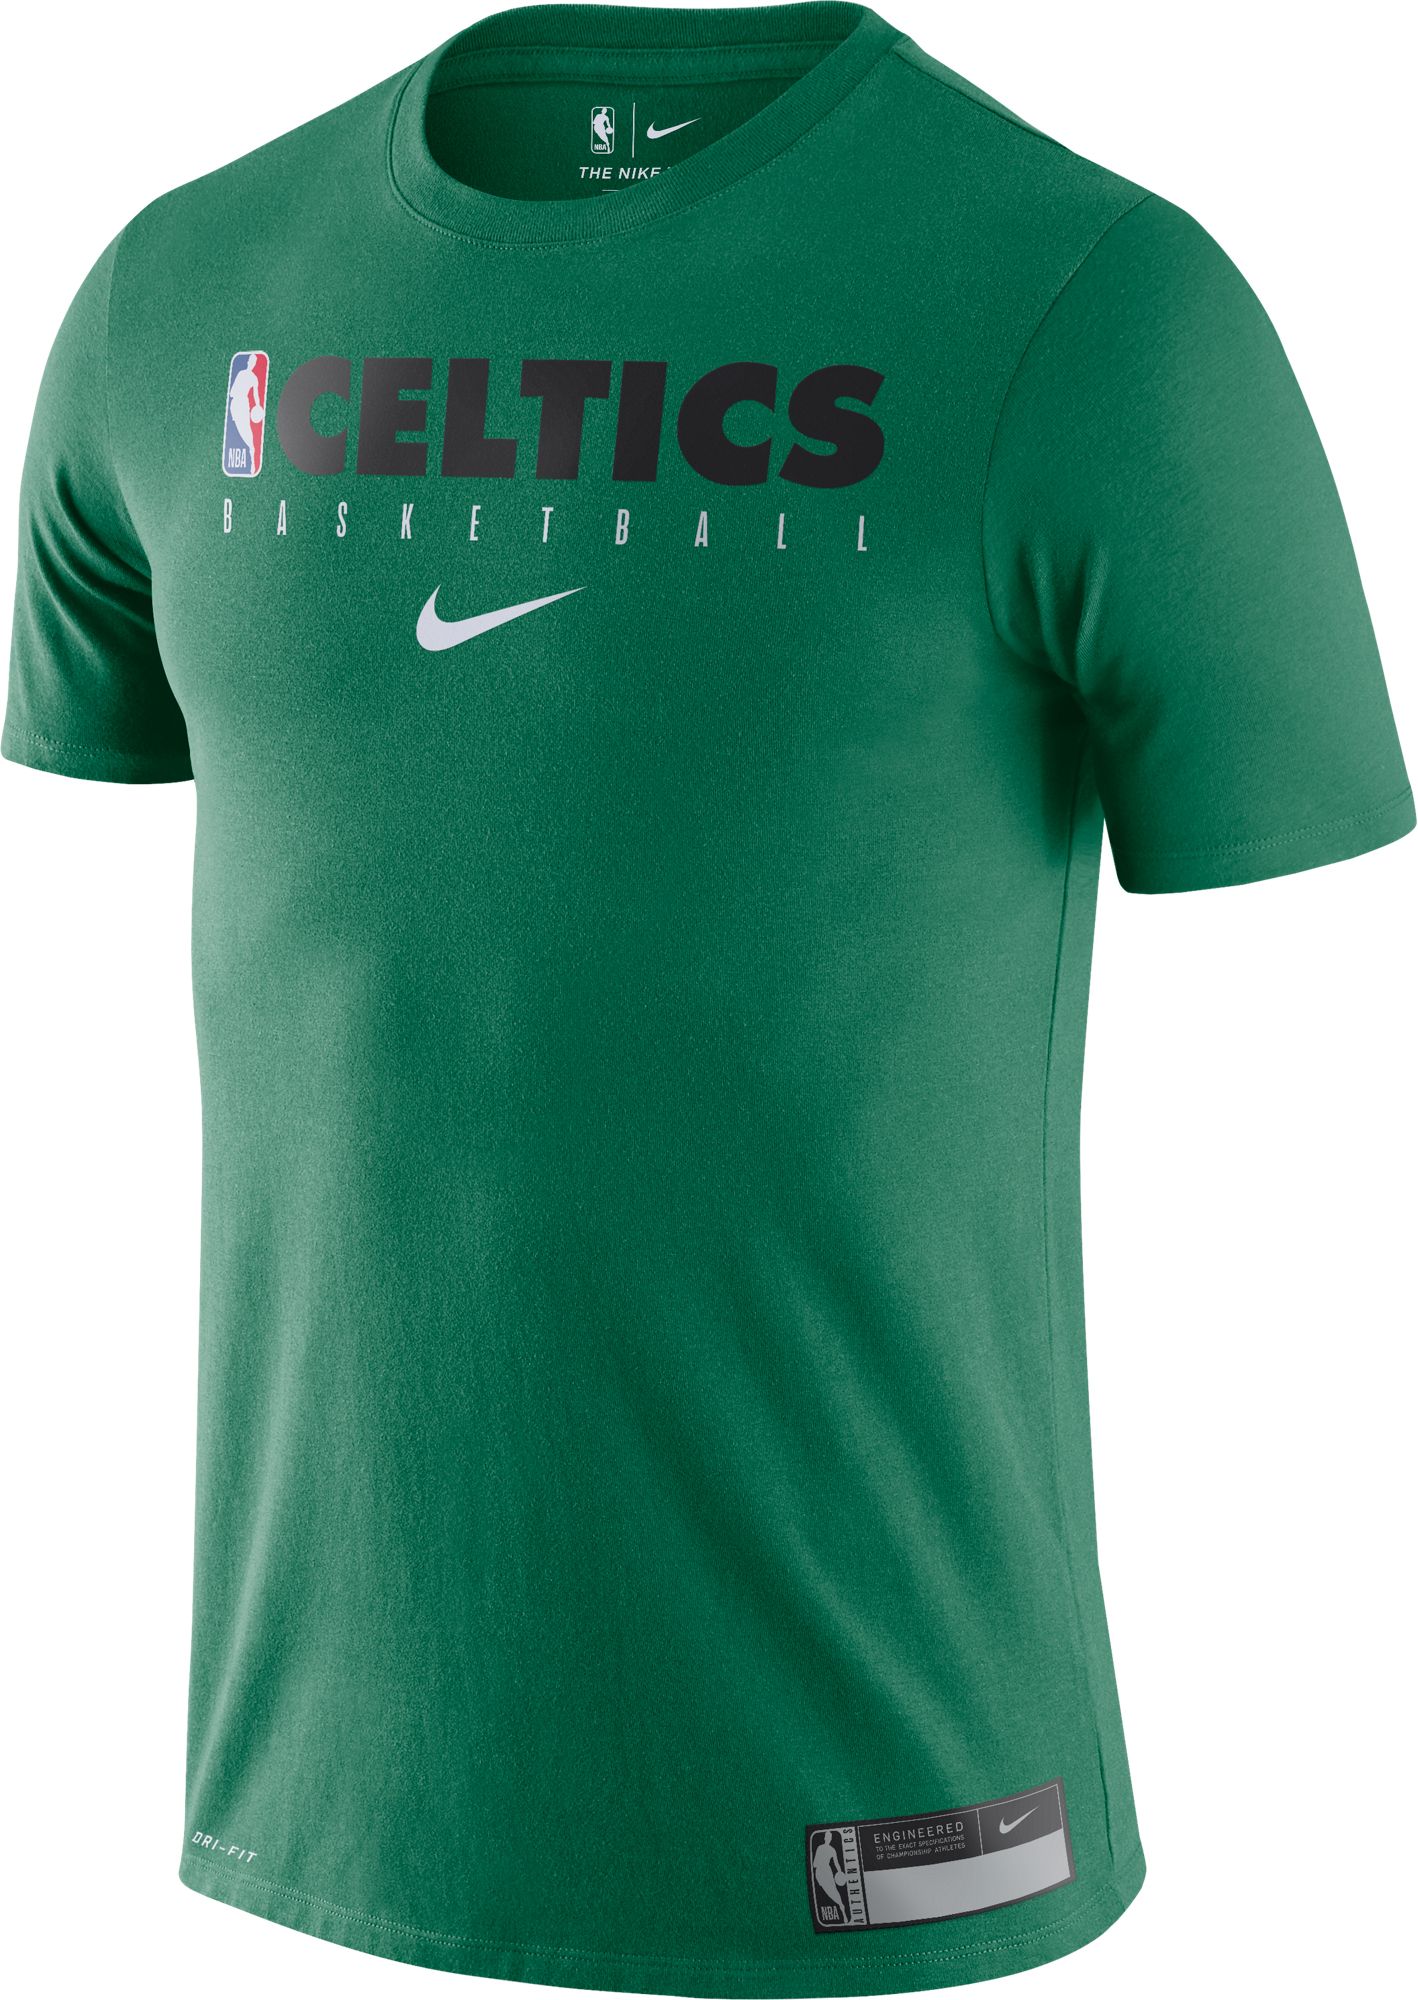 celtics practice jersey